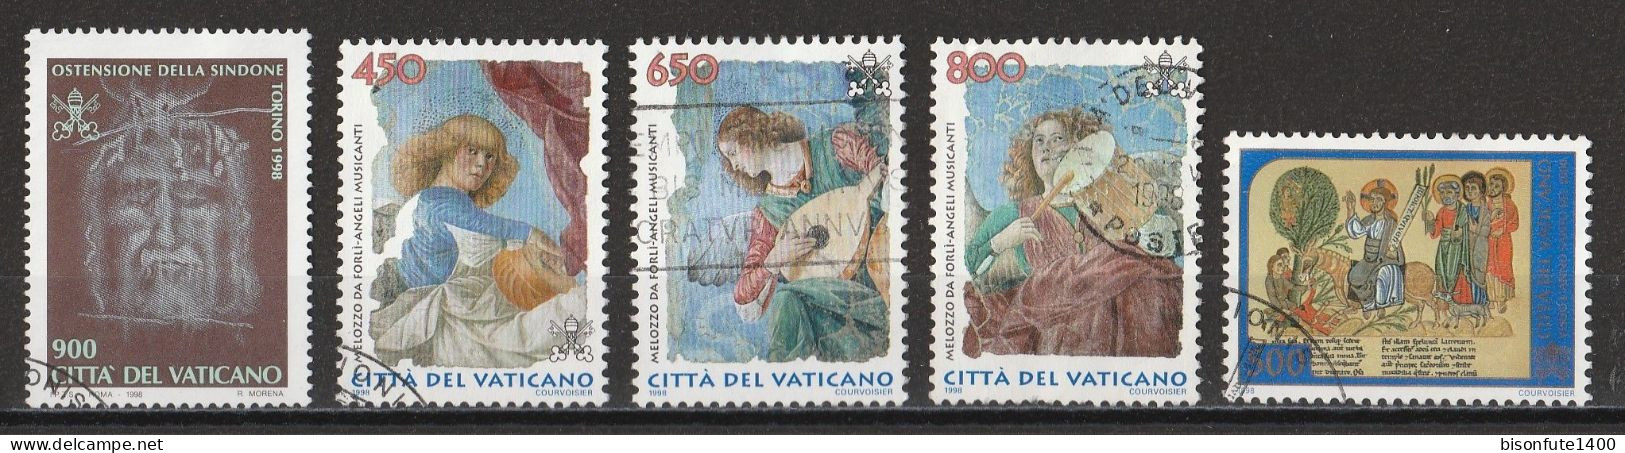 Vatican 1998 : Timbres Yvert & Tellier N° 1106 - 1108 - 1109 - 1110 - 1114 - 1115 - 1121 Et 1123 Oblitérés - Oblitérés